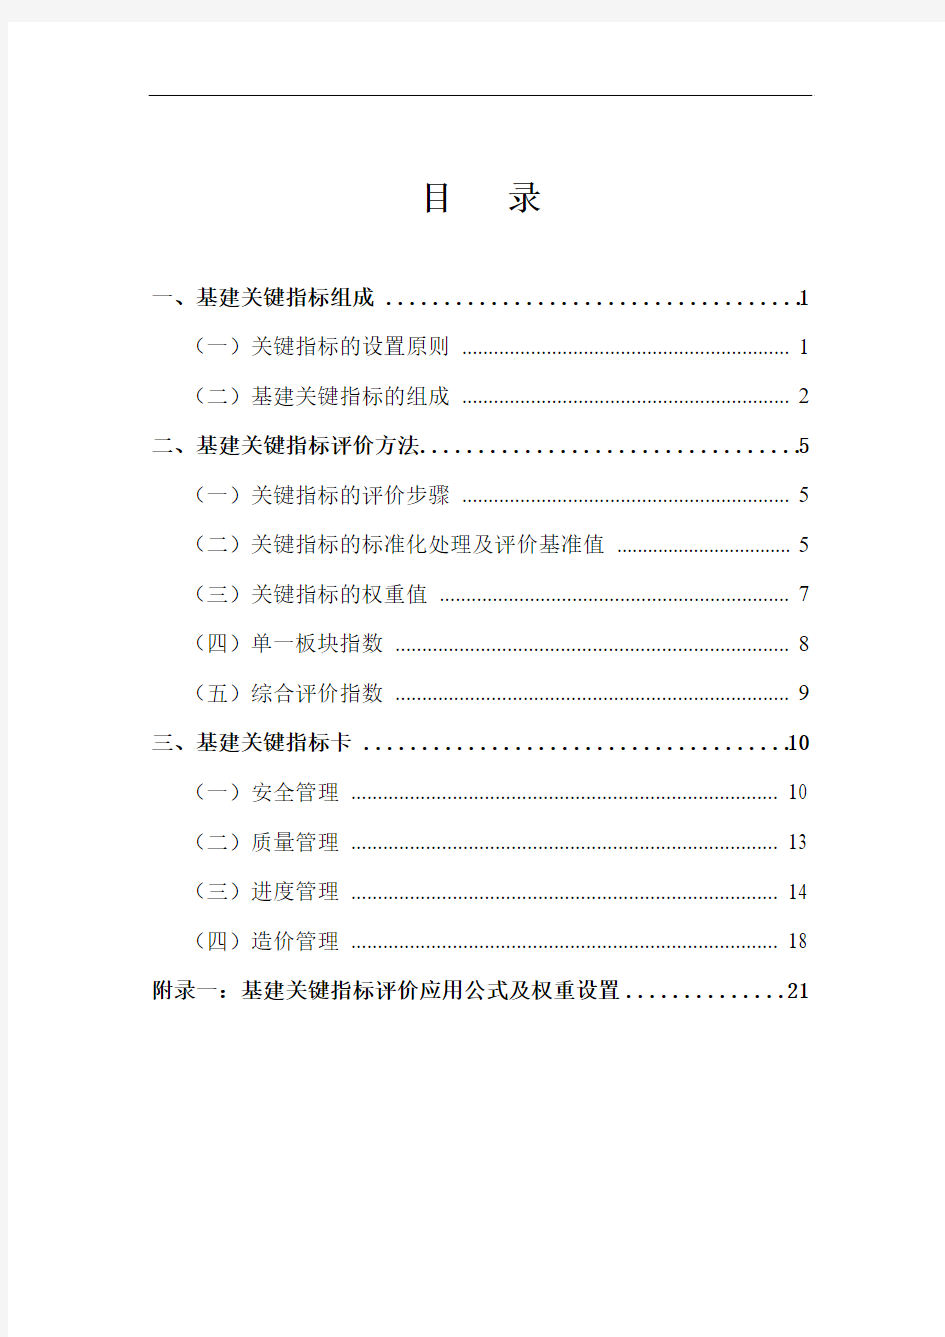 中国南方电网有限责任公司基建关键指标(KPI)辞典